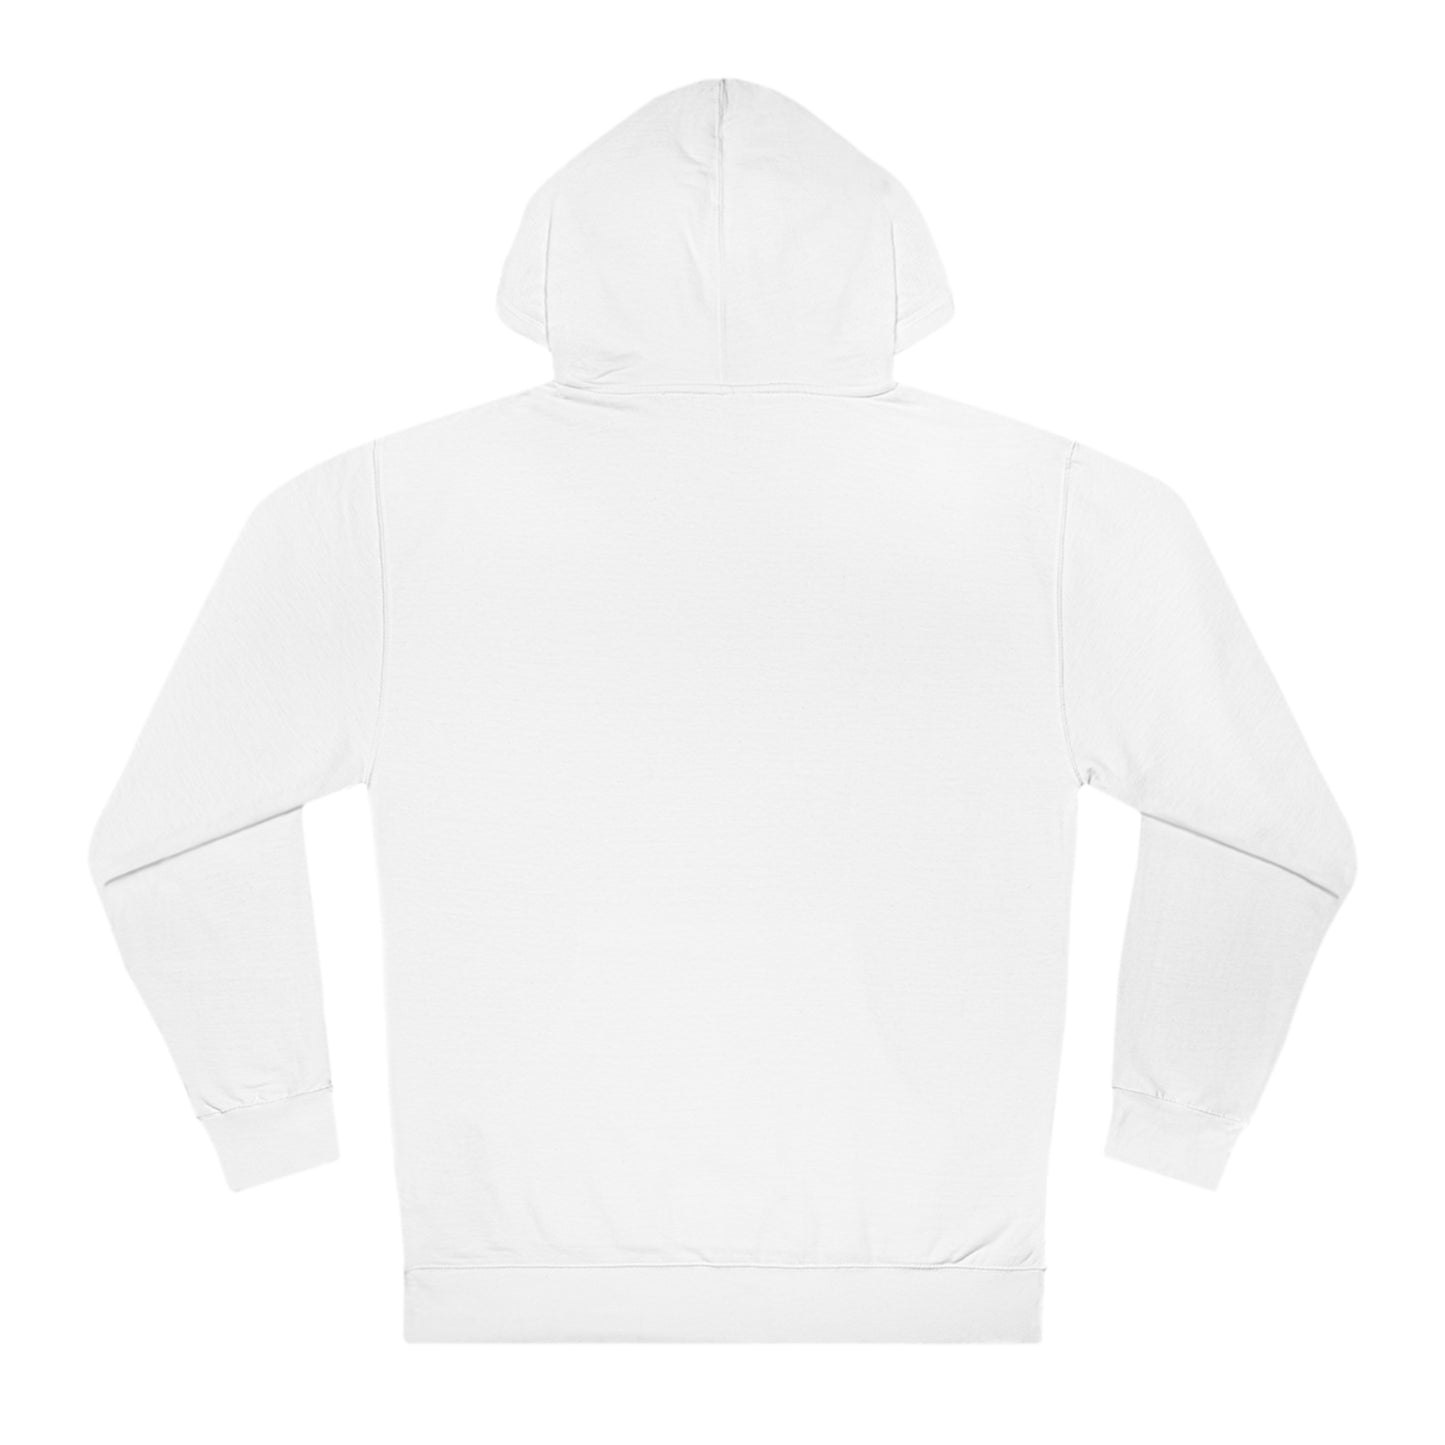 Copy of Unisex Hooded Sweatshirt